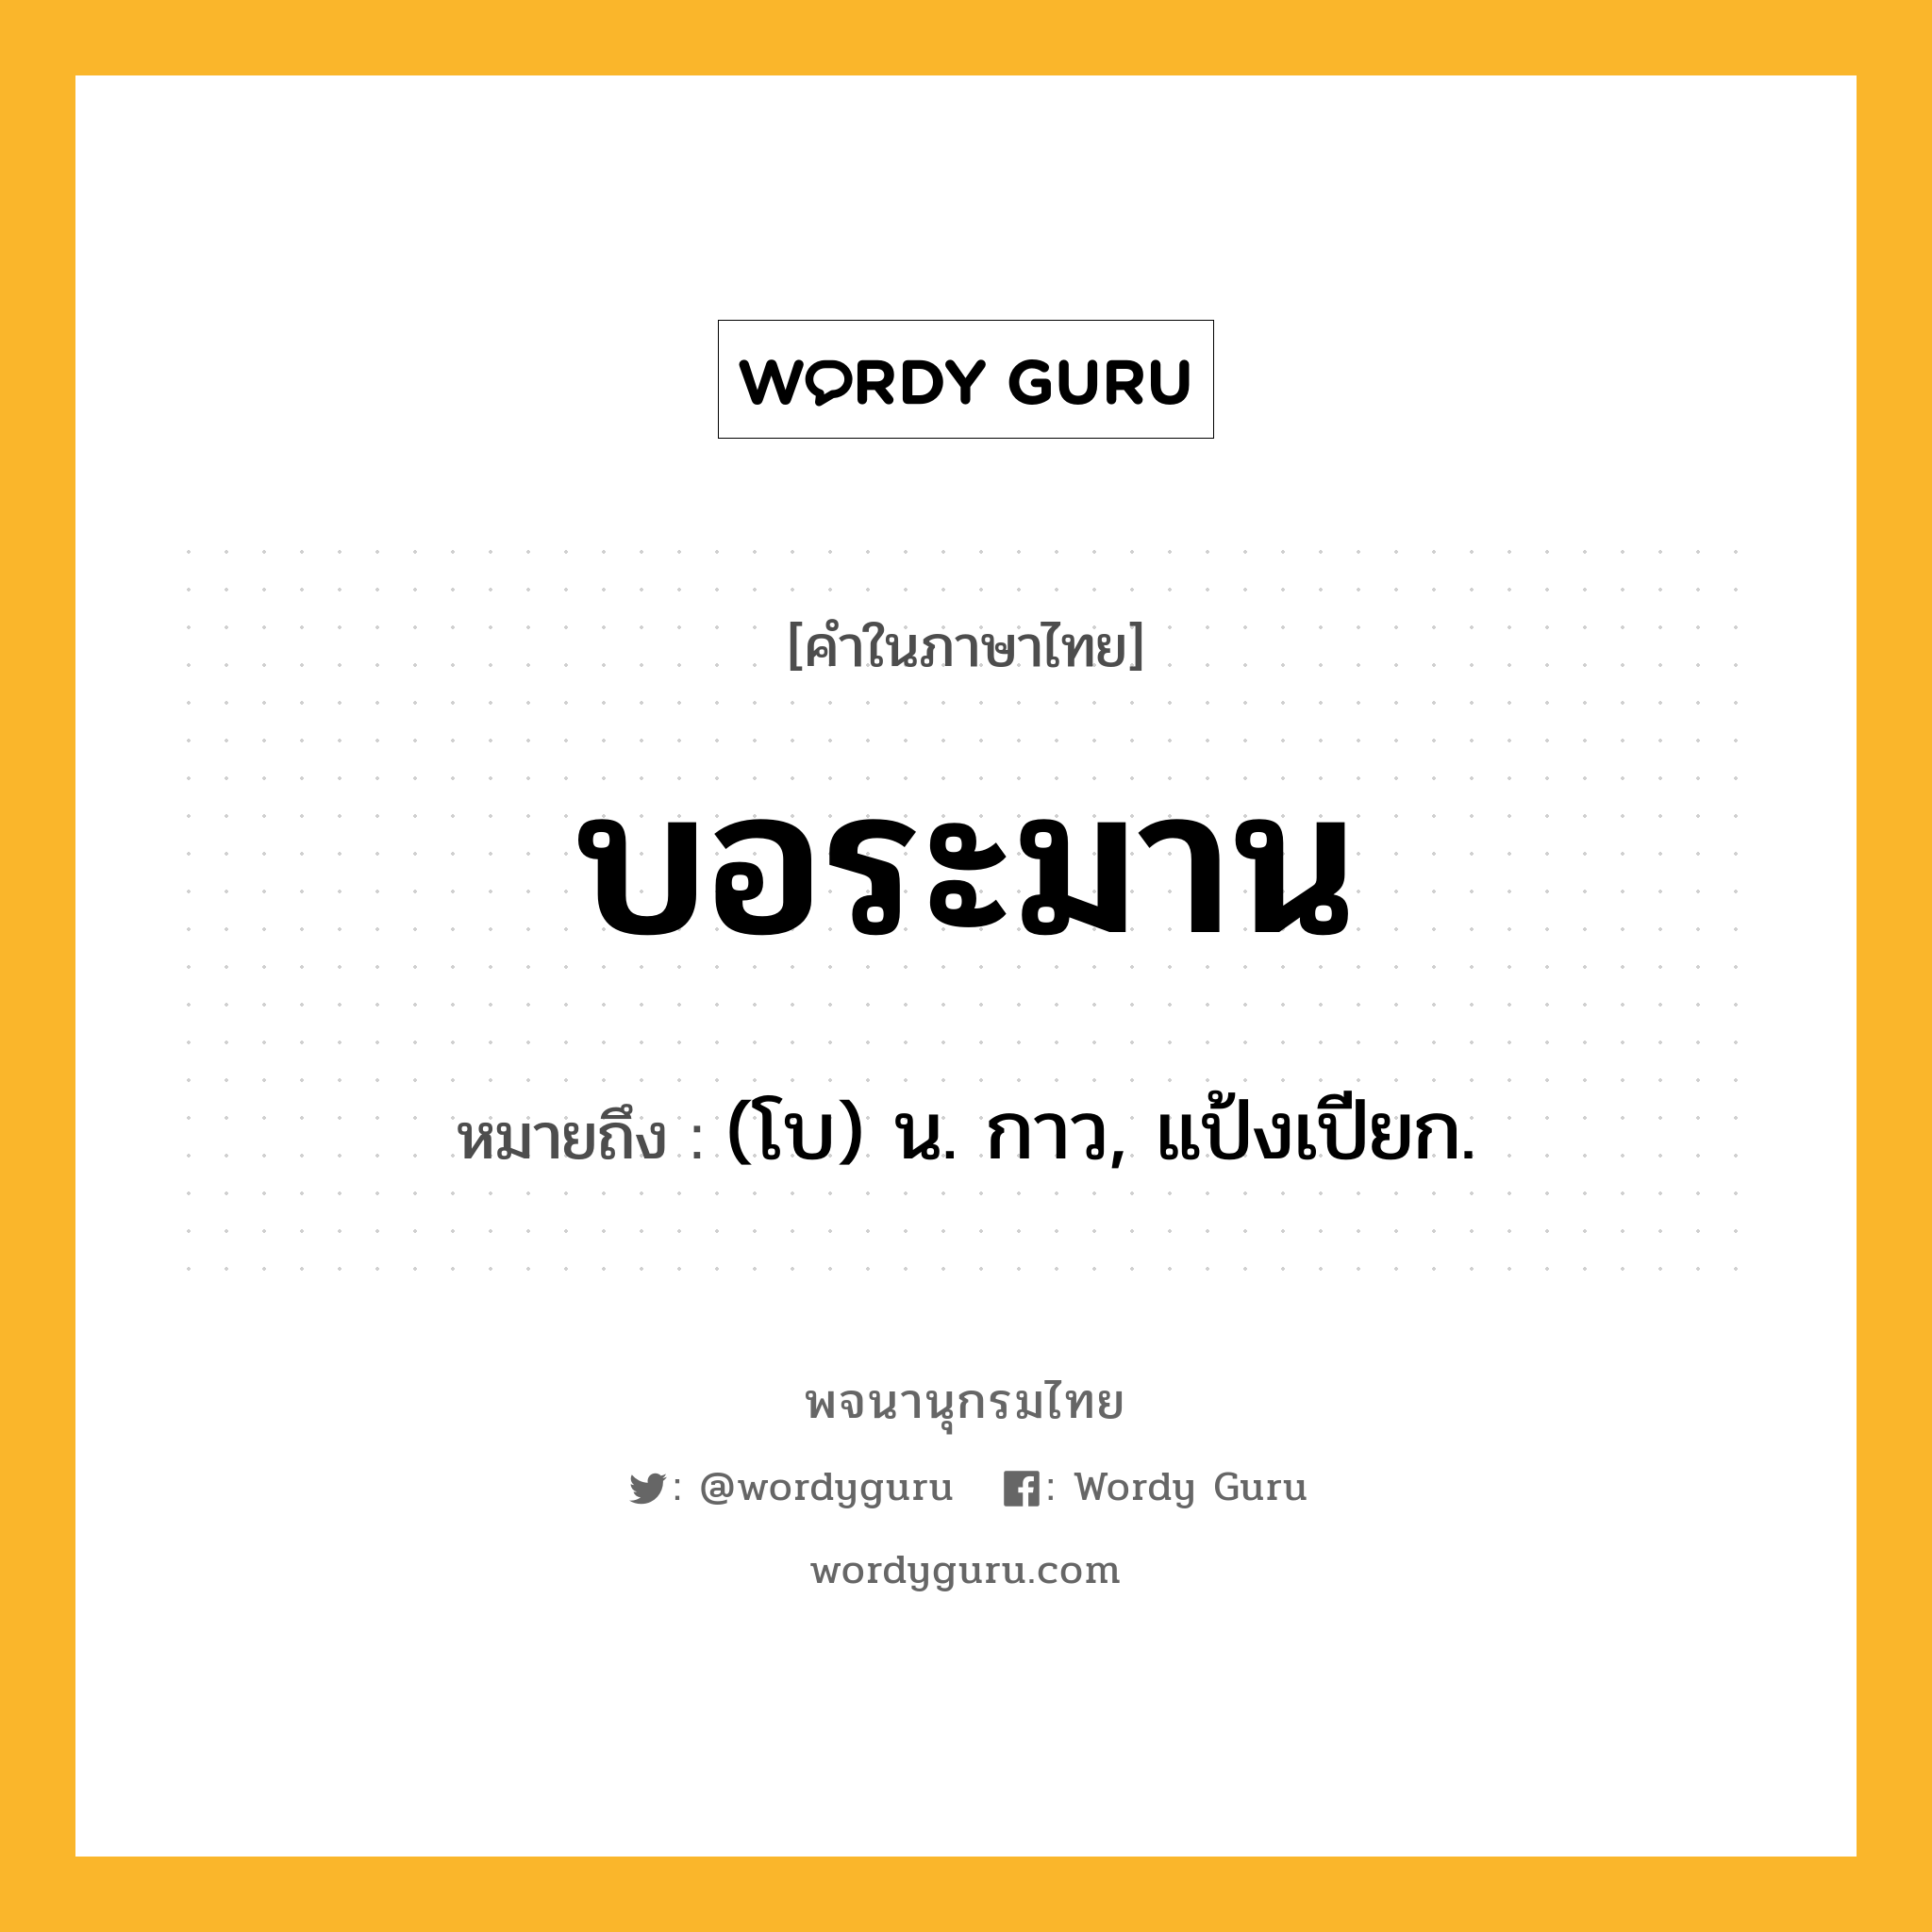 บอระมาน ความหมาย หมายถึงอะไร?, คำในภาษาไทย บอระมาน หมายถึง (โบ) น. กาว, แป้งเปียก.